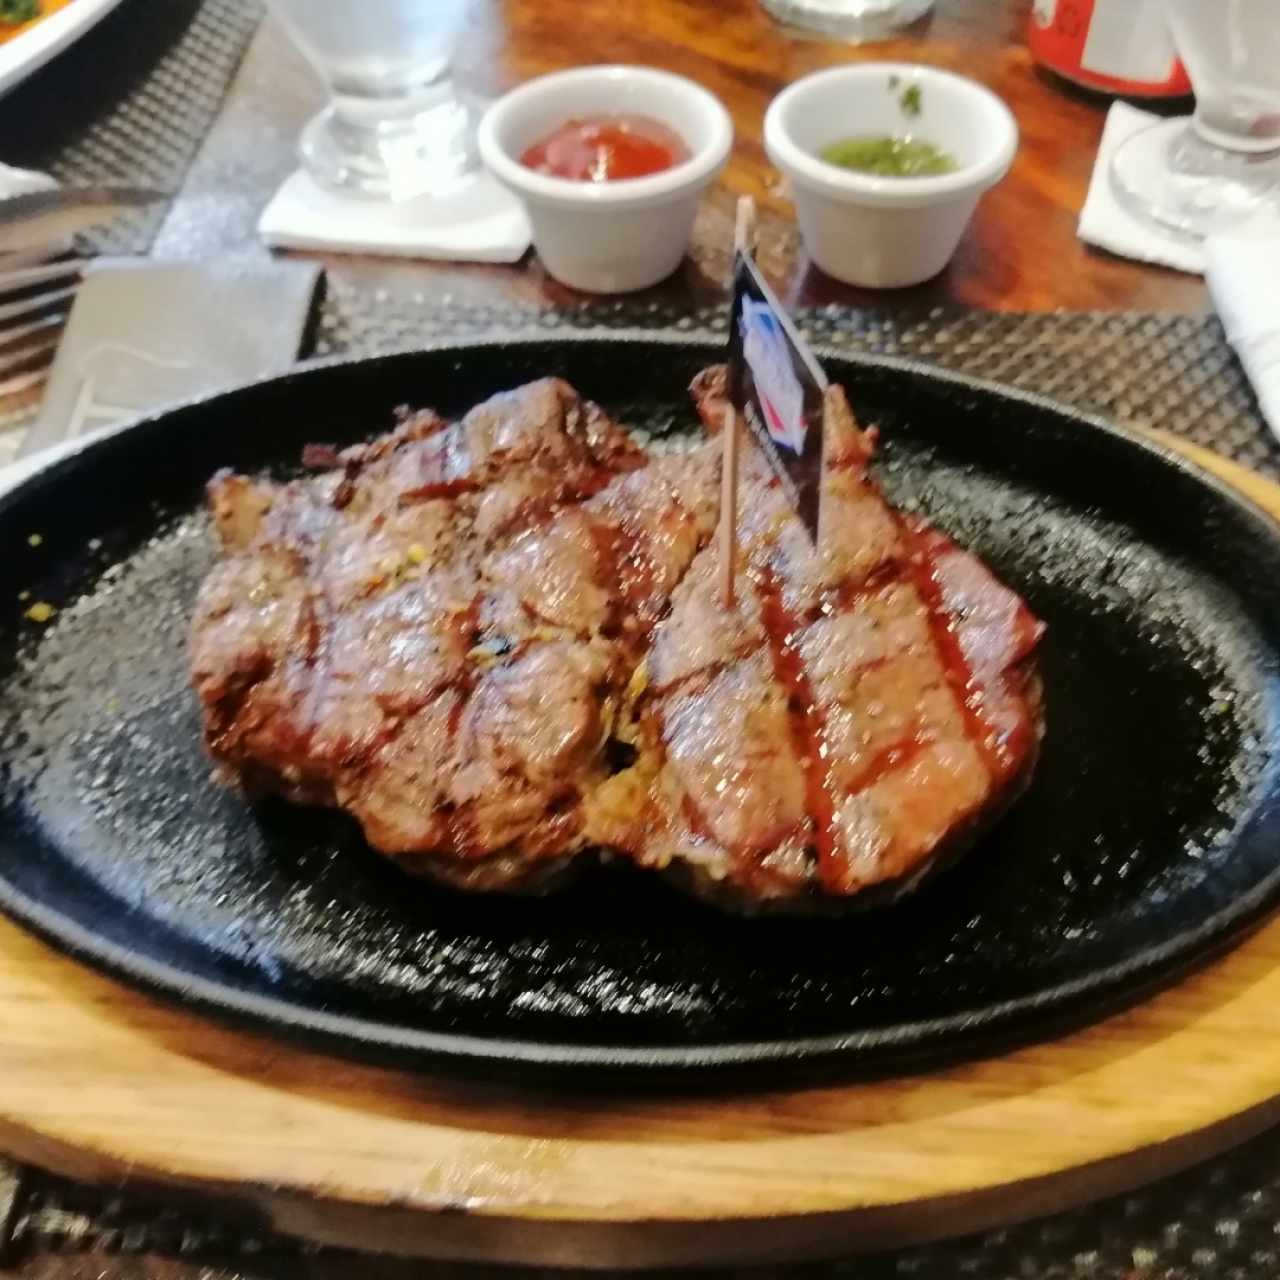 RibEye steak 